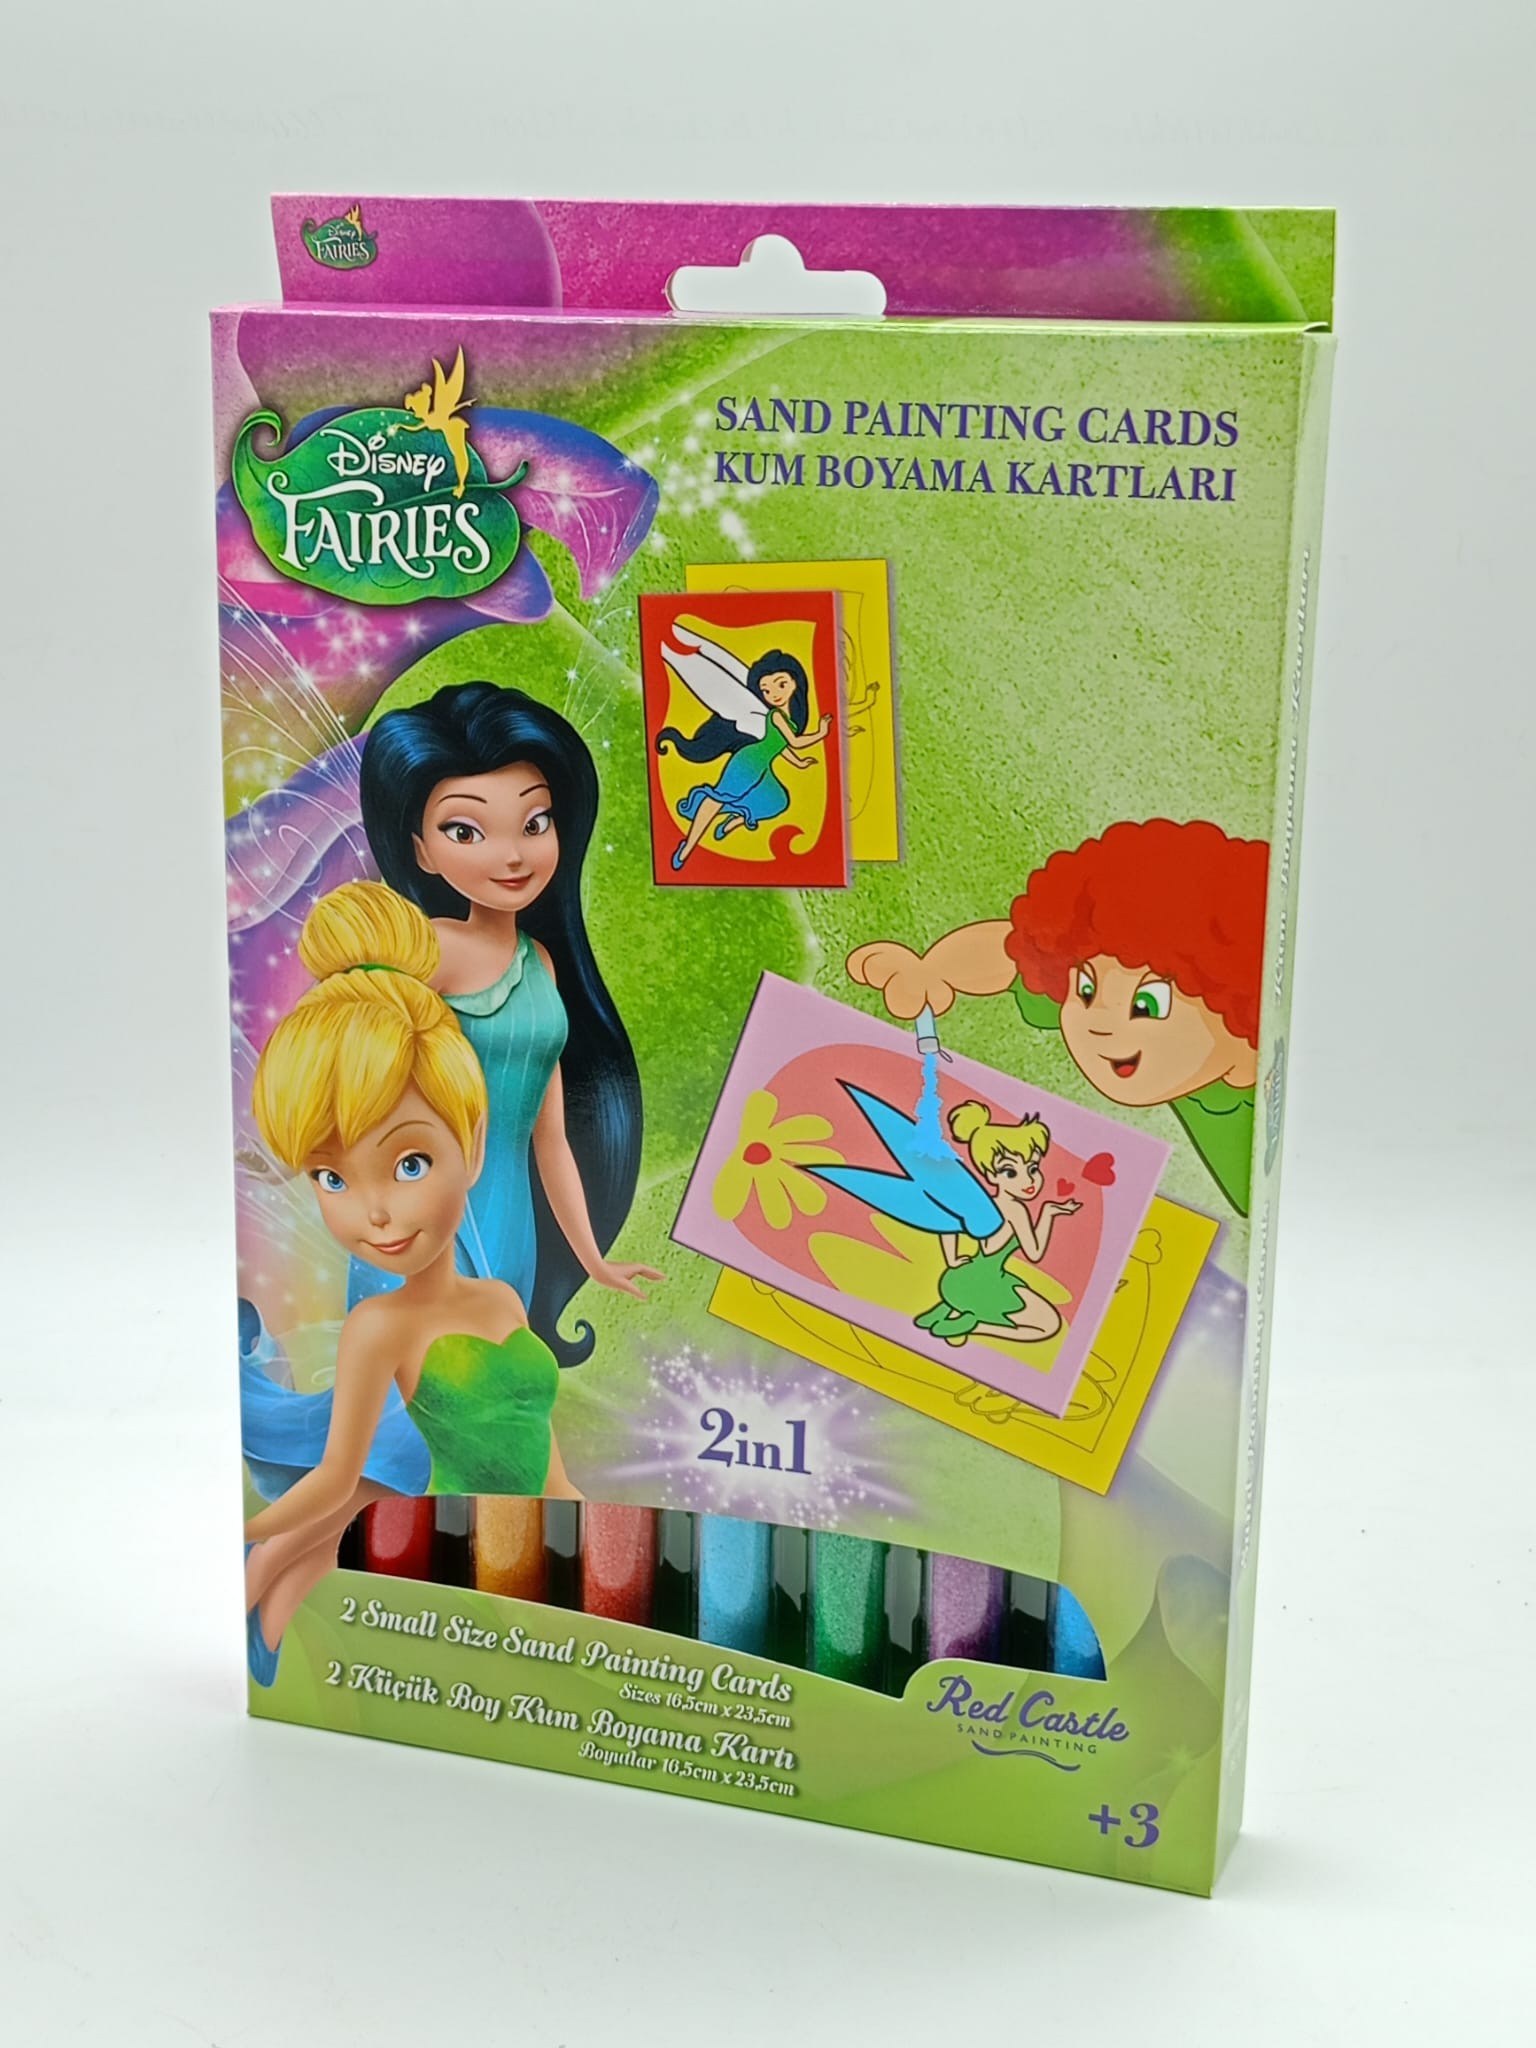 Disney Fairies 2 Periler Tinkerbell&Silvermist Eğitici ve Eğlenceli Kum Boyama Seti-Red Castle DS-12